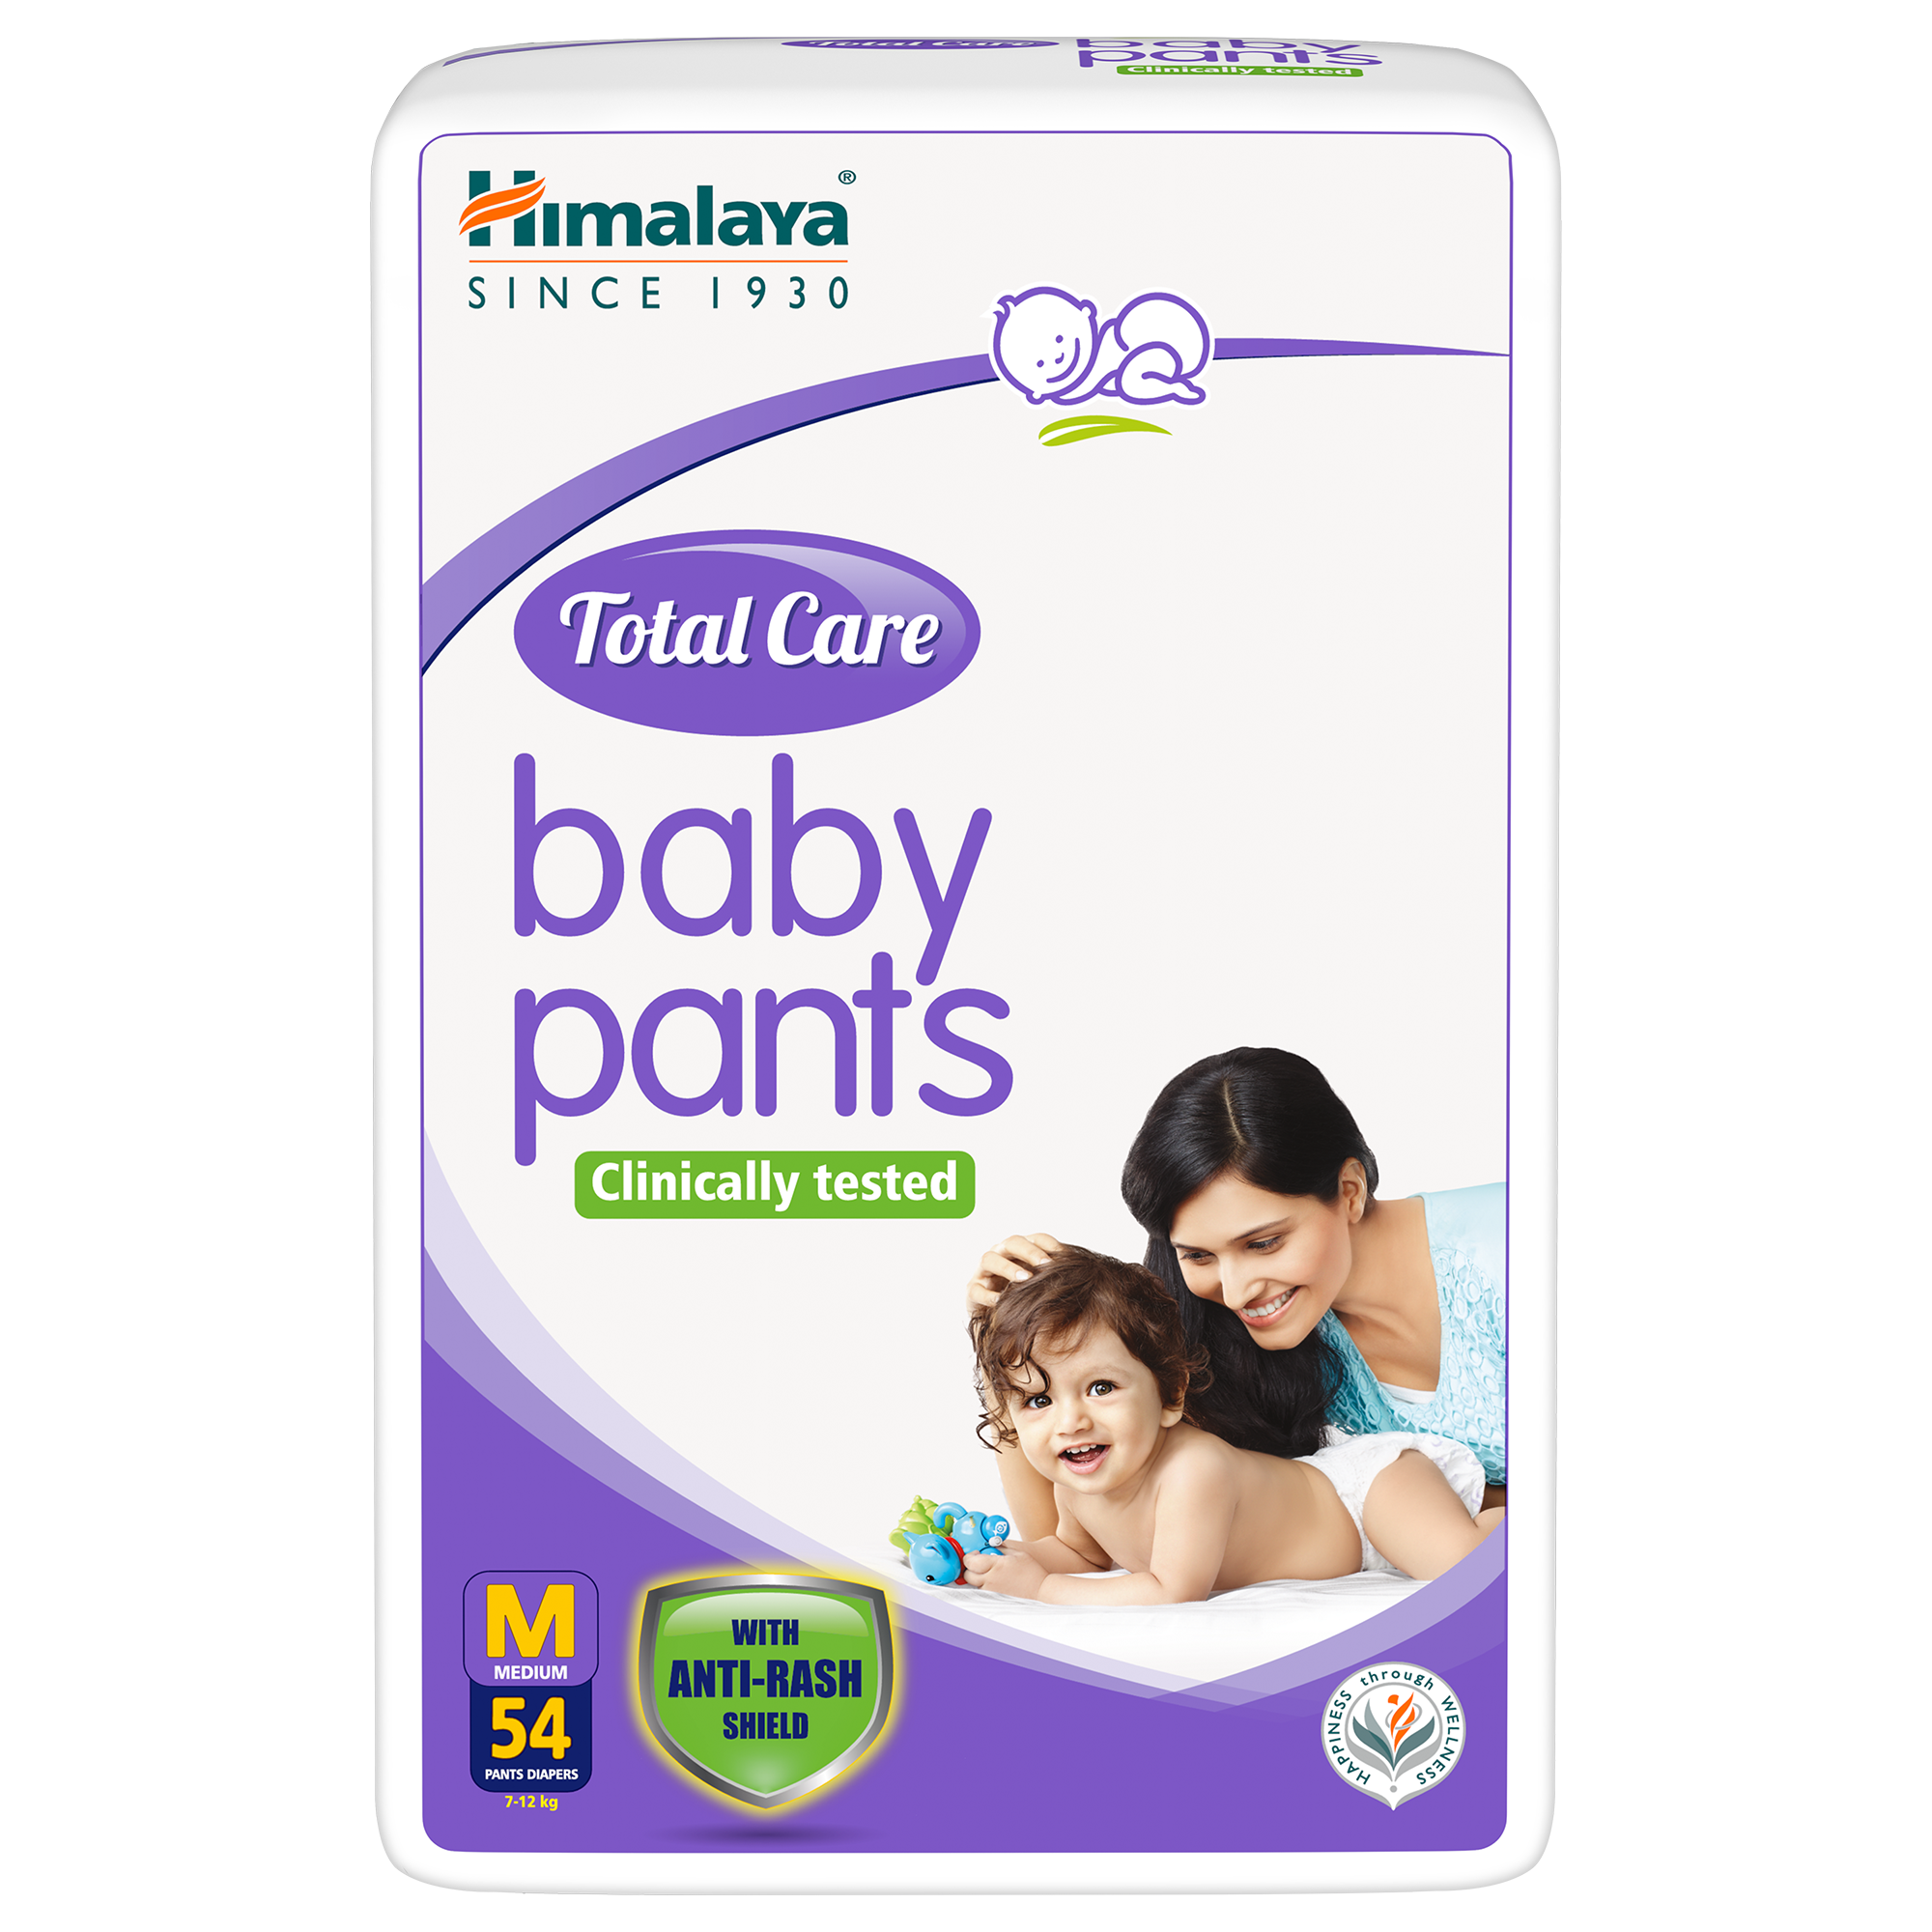 HIMALAYA Total Care Extra Large Size Baby Pants Diapers 54 Count set of 2   XL  Buy 54 HIMALAYA Pant Diapers  Flipkartcom